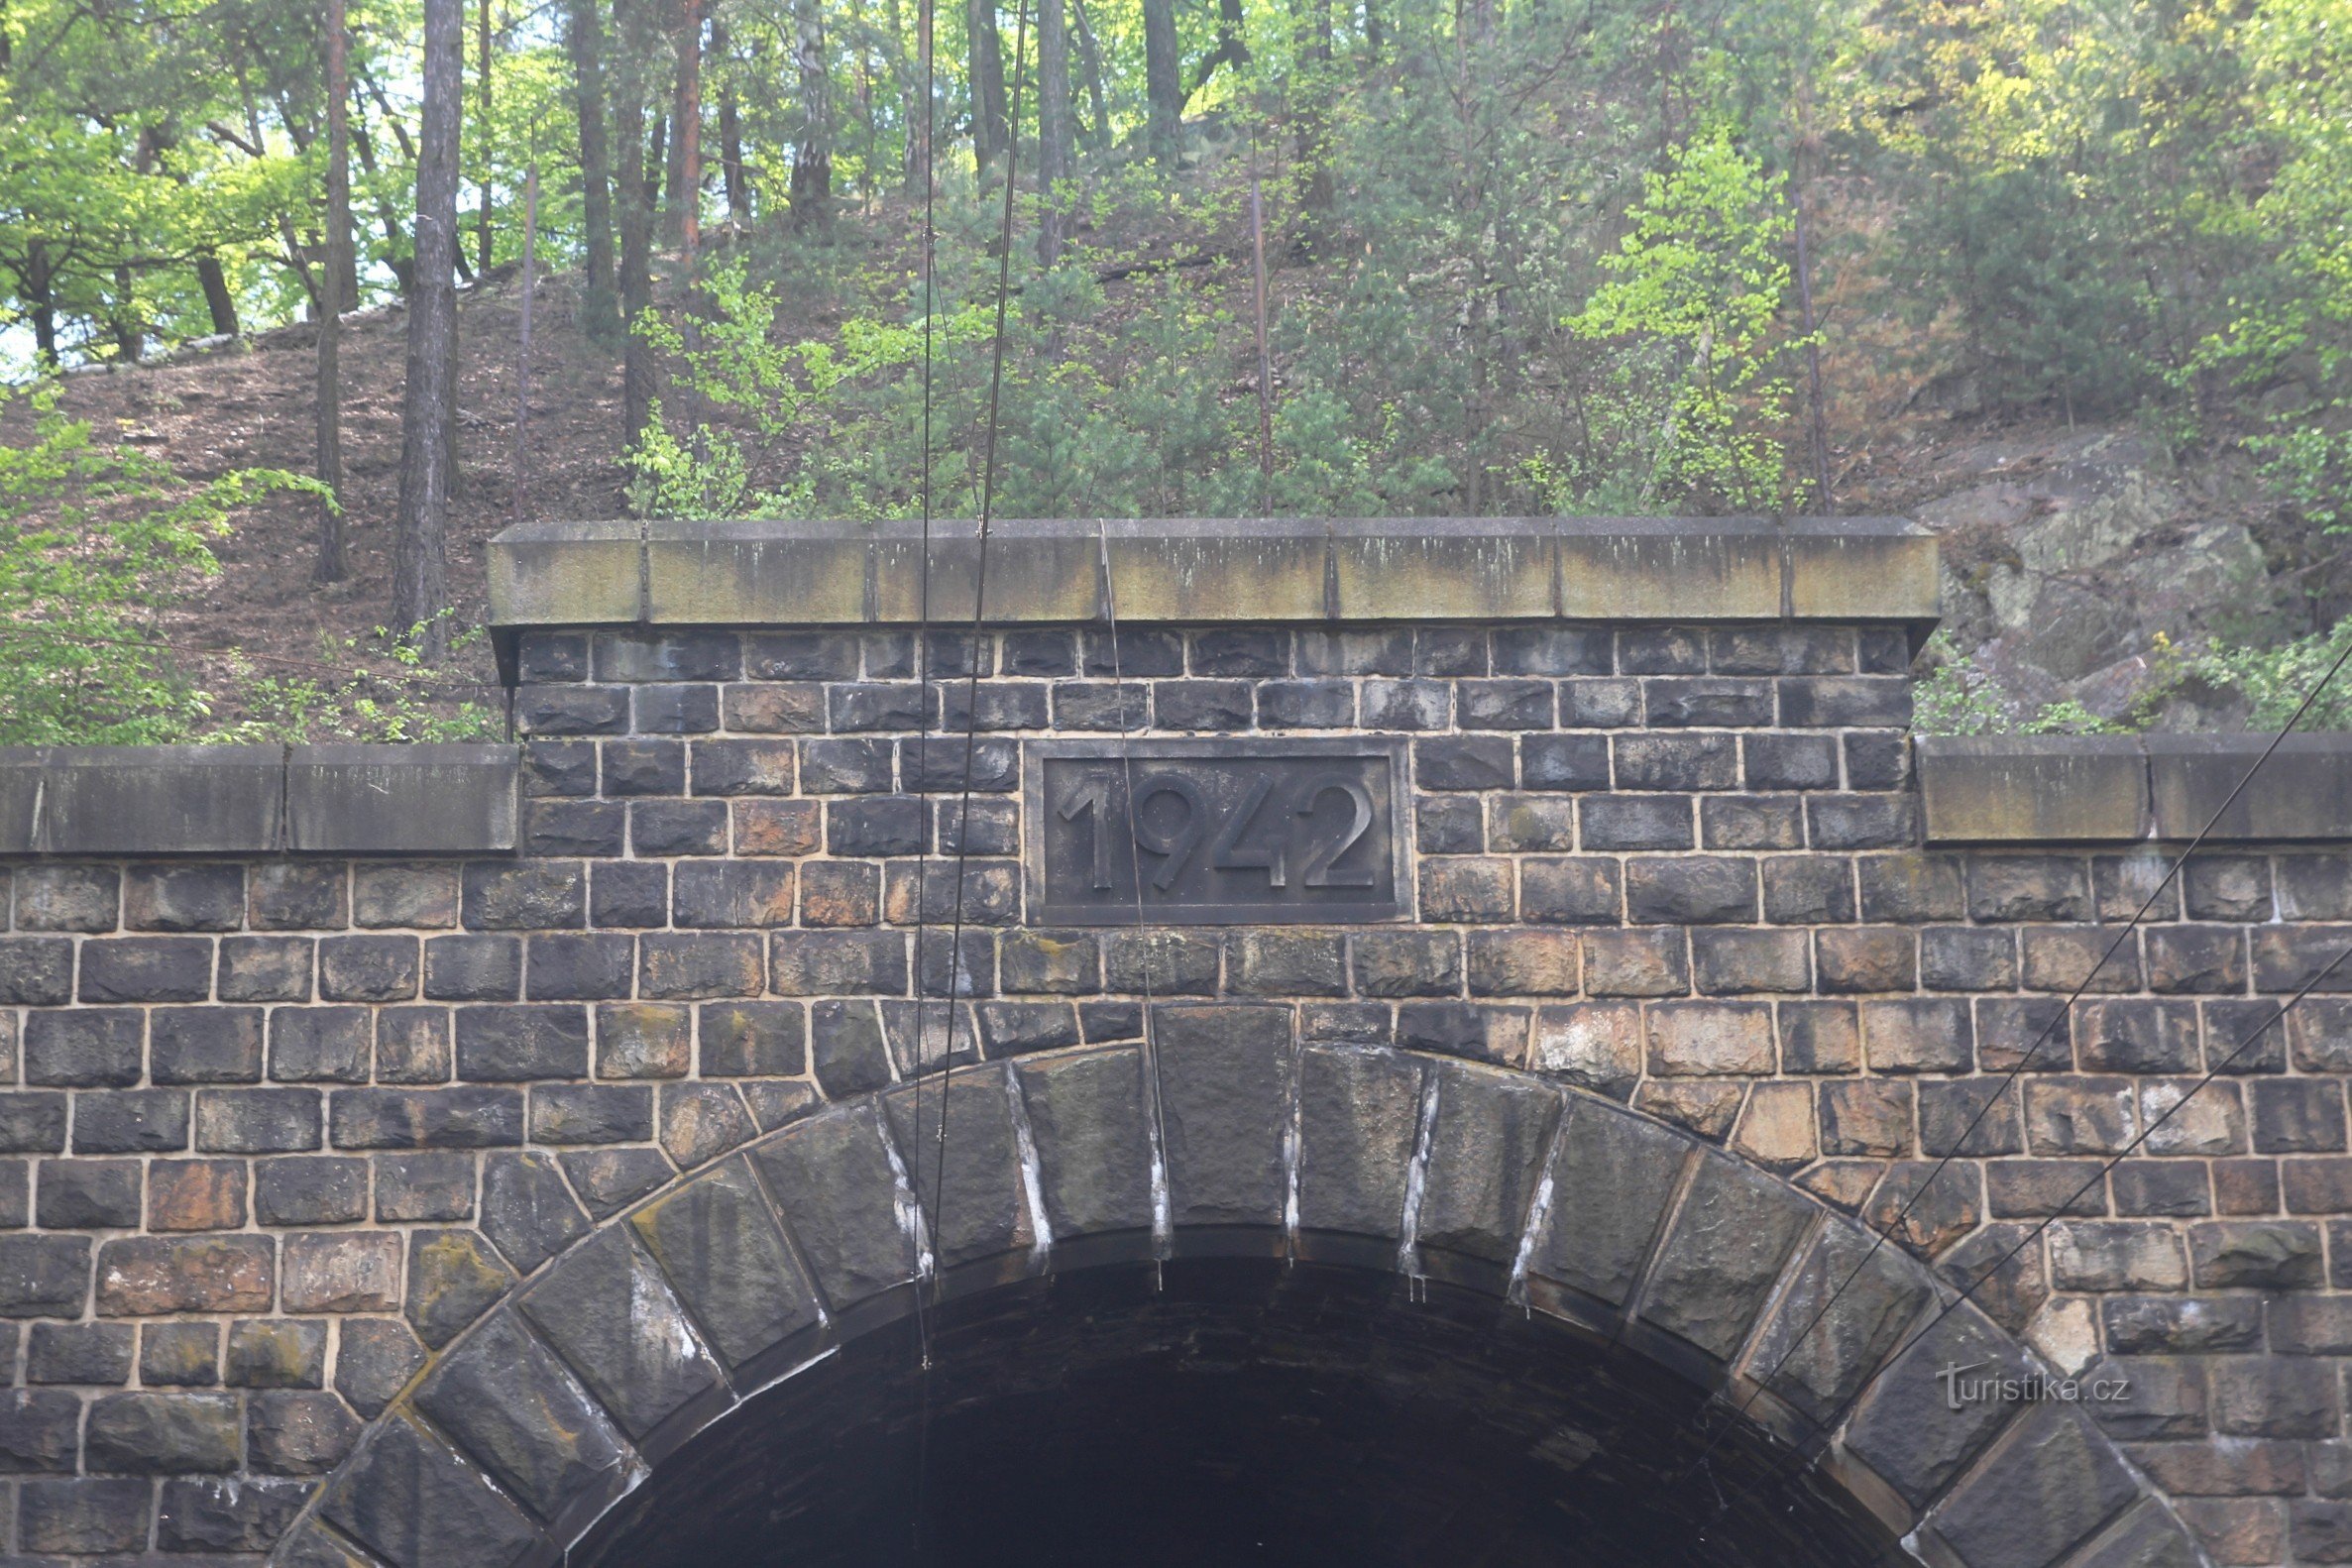 A parte superior do portal de um dos túneis com a data de construção